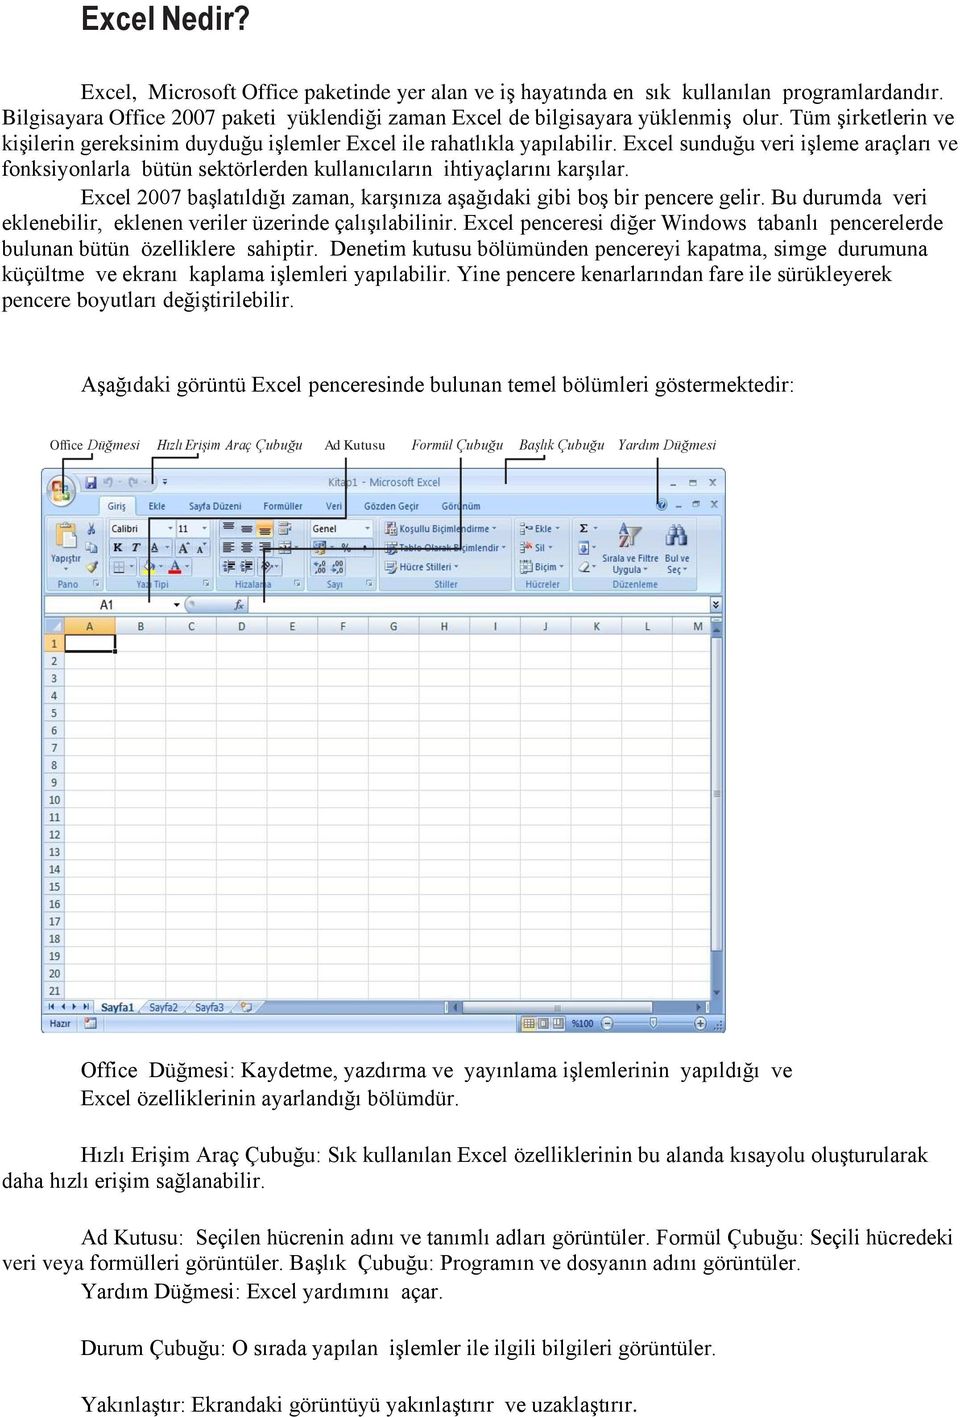 Excel sunduğu veri işleme araçları ve fonksiyonlarla bütün sektörlerden kullanıcıların ihtiyaçlarını karşılar. Excel 2007 başlatıldığı zaman, karşınıza aşağıdaki gibi boş bir pencere gelir.